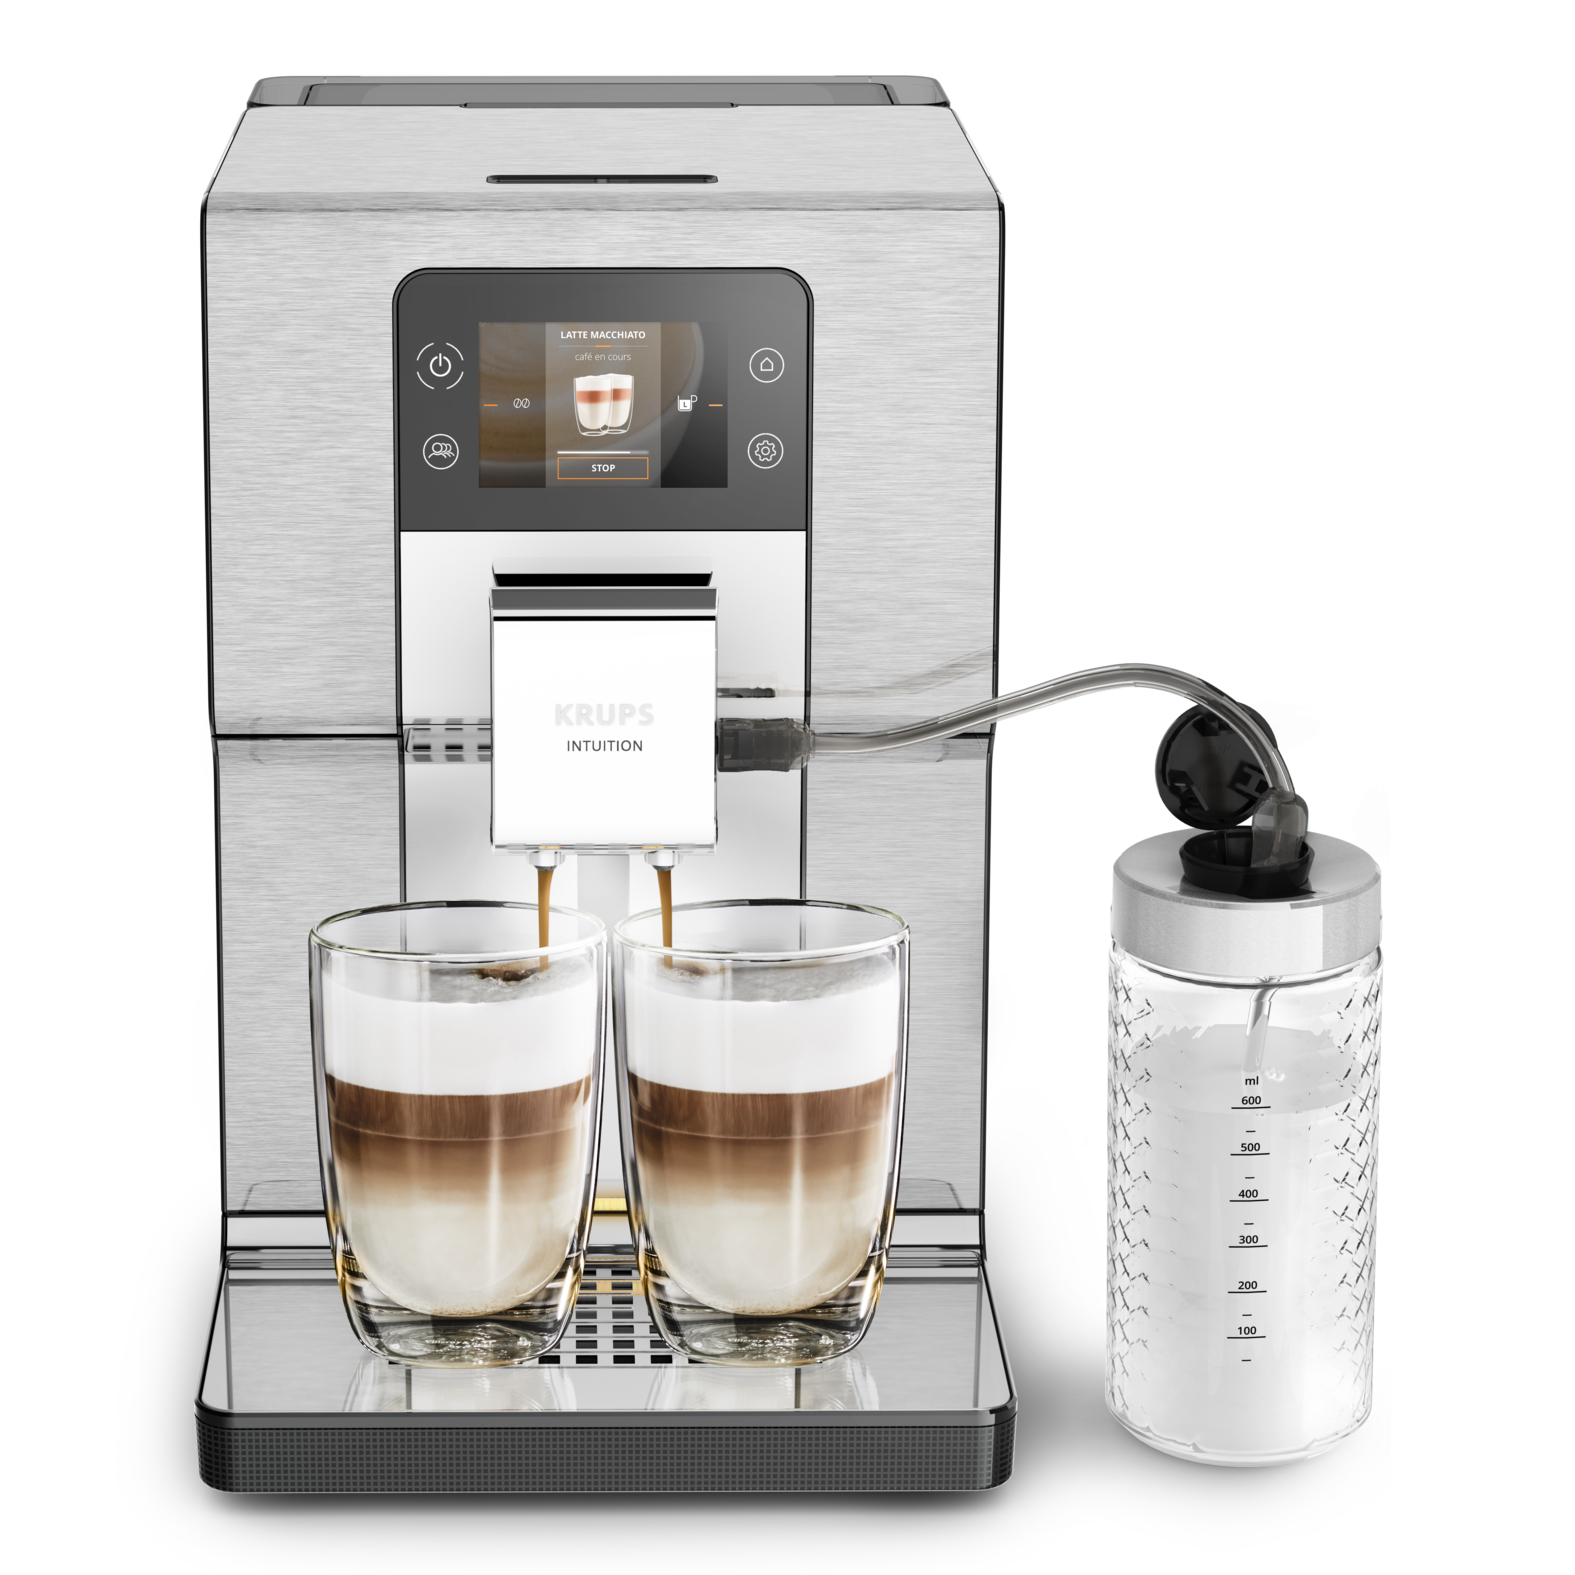 Автоматическая кофемашина Intuition Experience + EA877D10 кофемашина автоматическая smeg bcc02egmeu зеленый серебристый